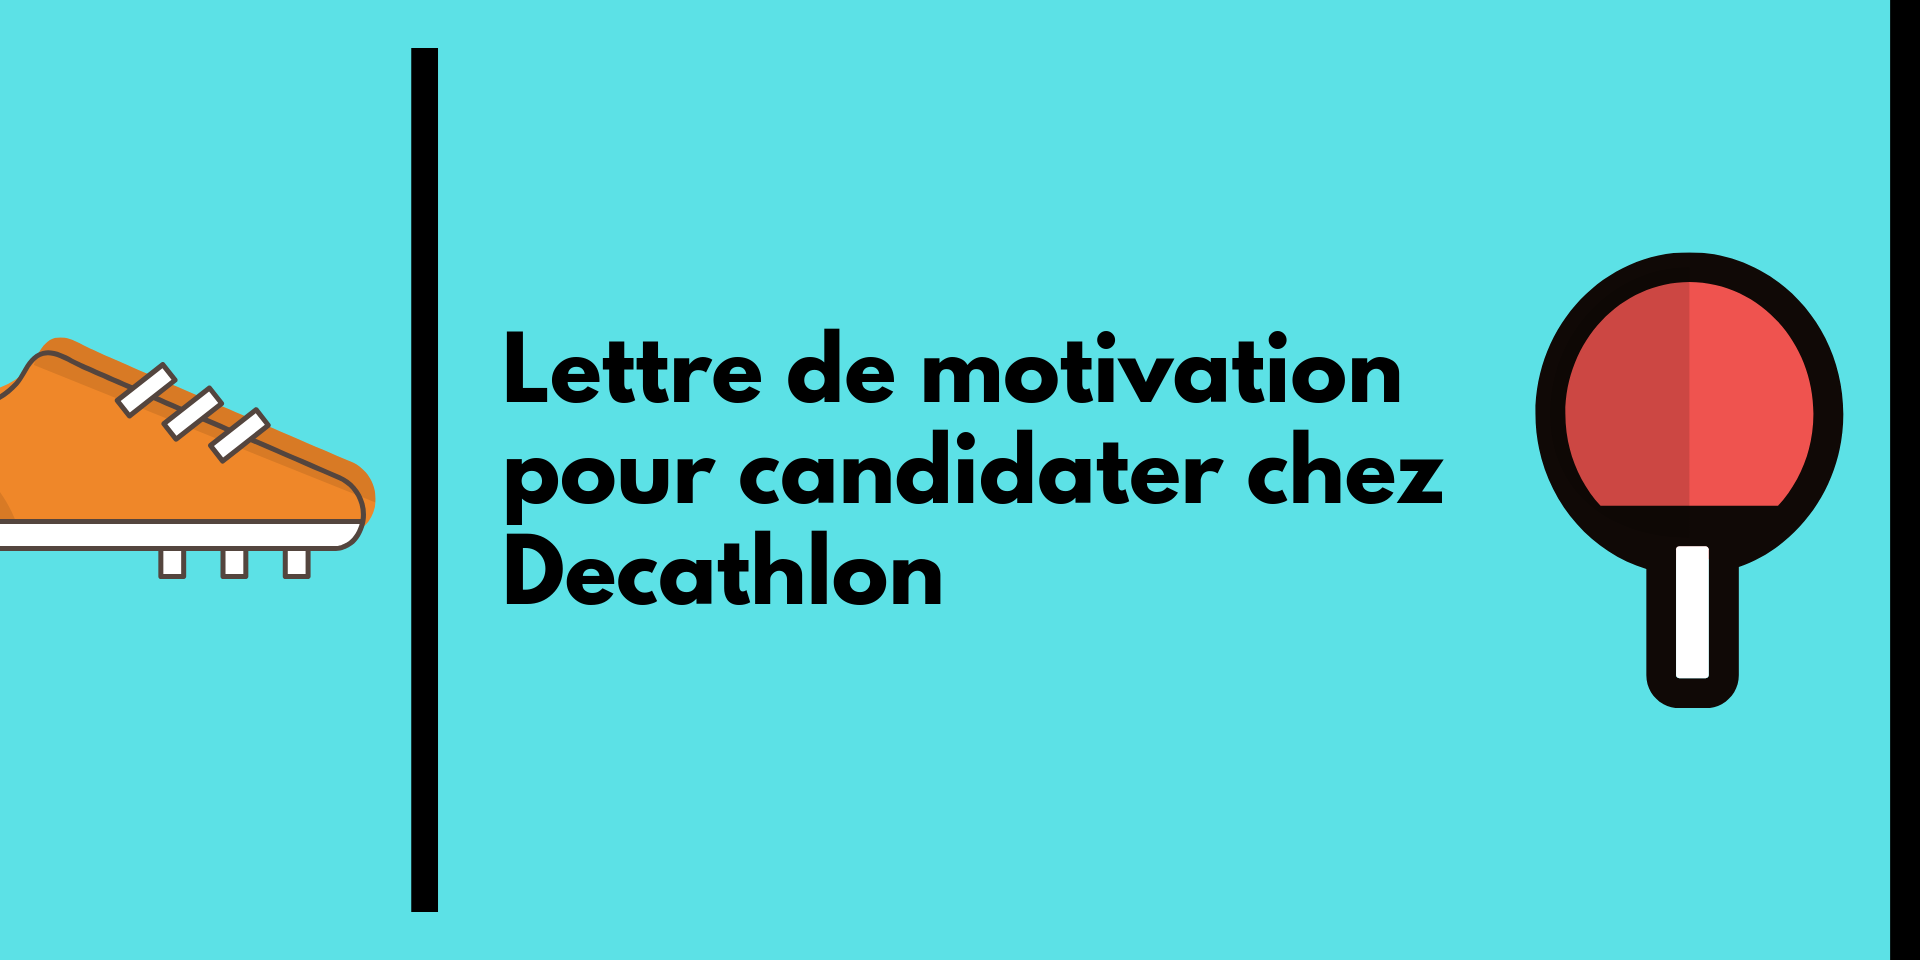 Lettre de motivation pour candidater chez Decathlon